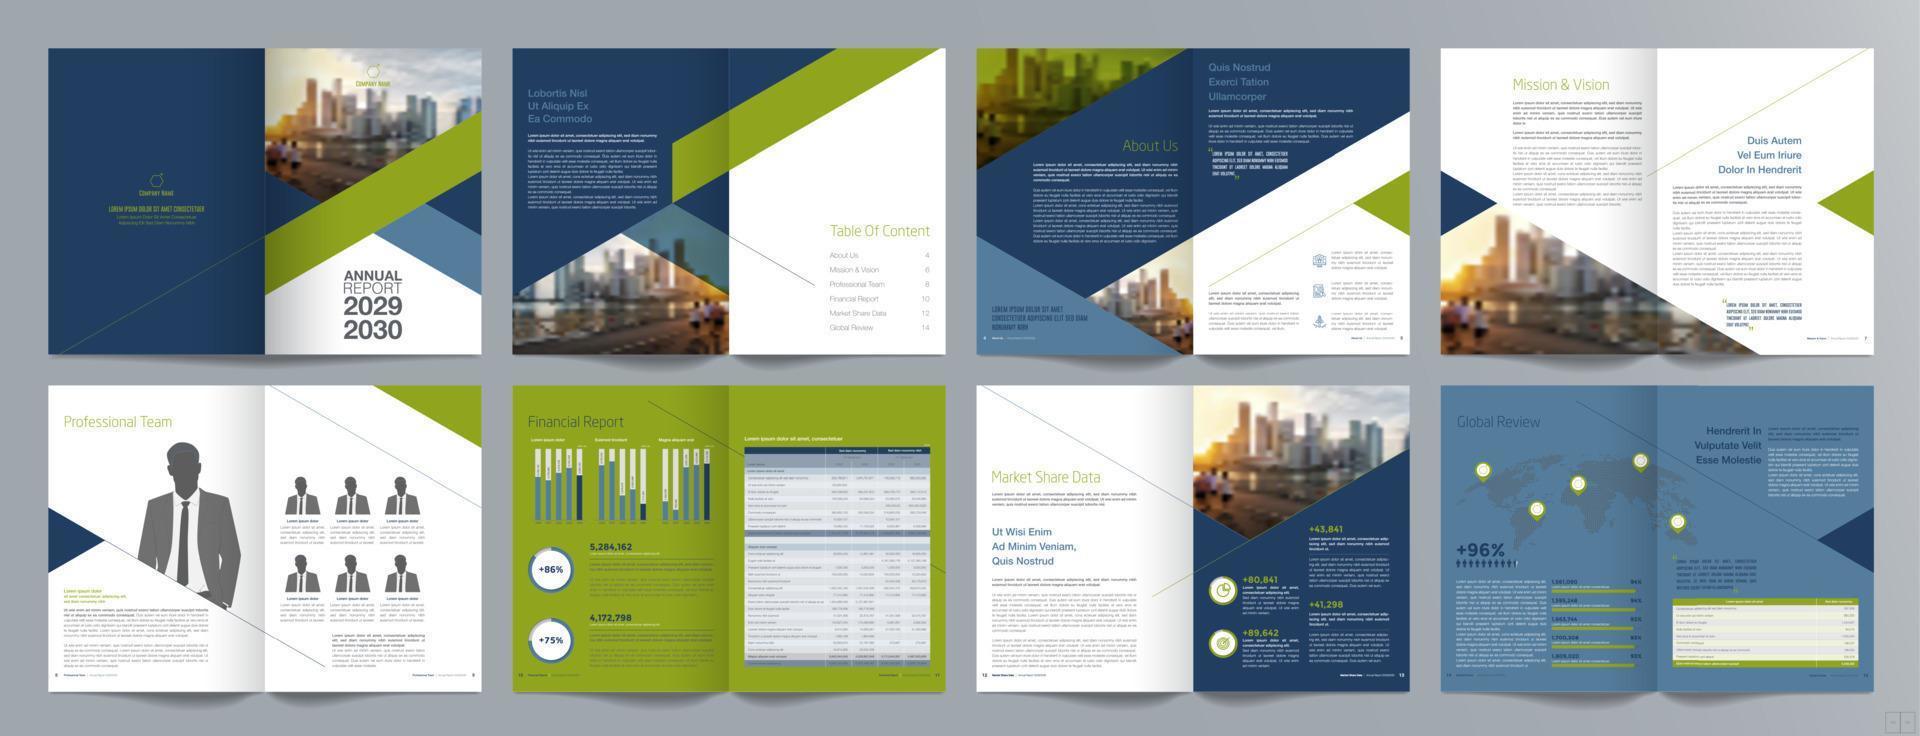 Broschürenvorlage für Unternehmenspräsentationen, Jahresbericht, 16-seitige, minimalistische, flache, geometrische Designvorlage für Geschäftsbroschüren, Größe A4. vektor